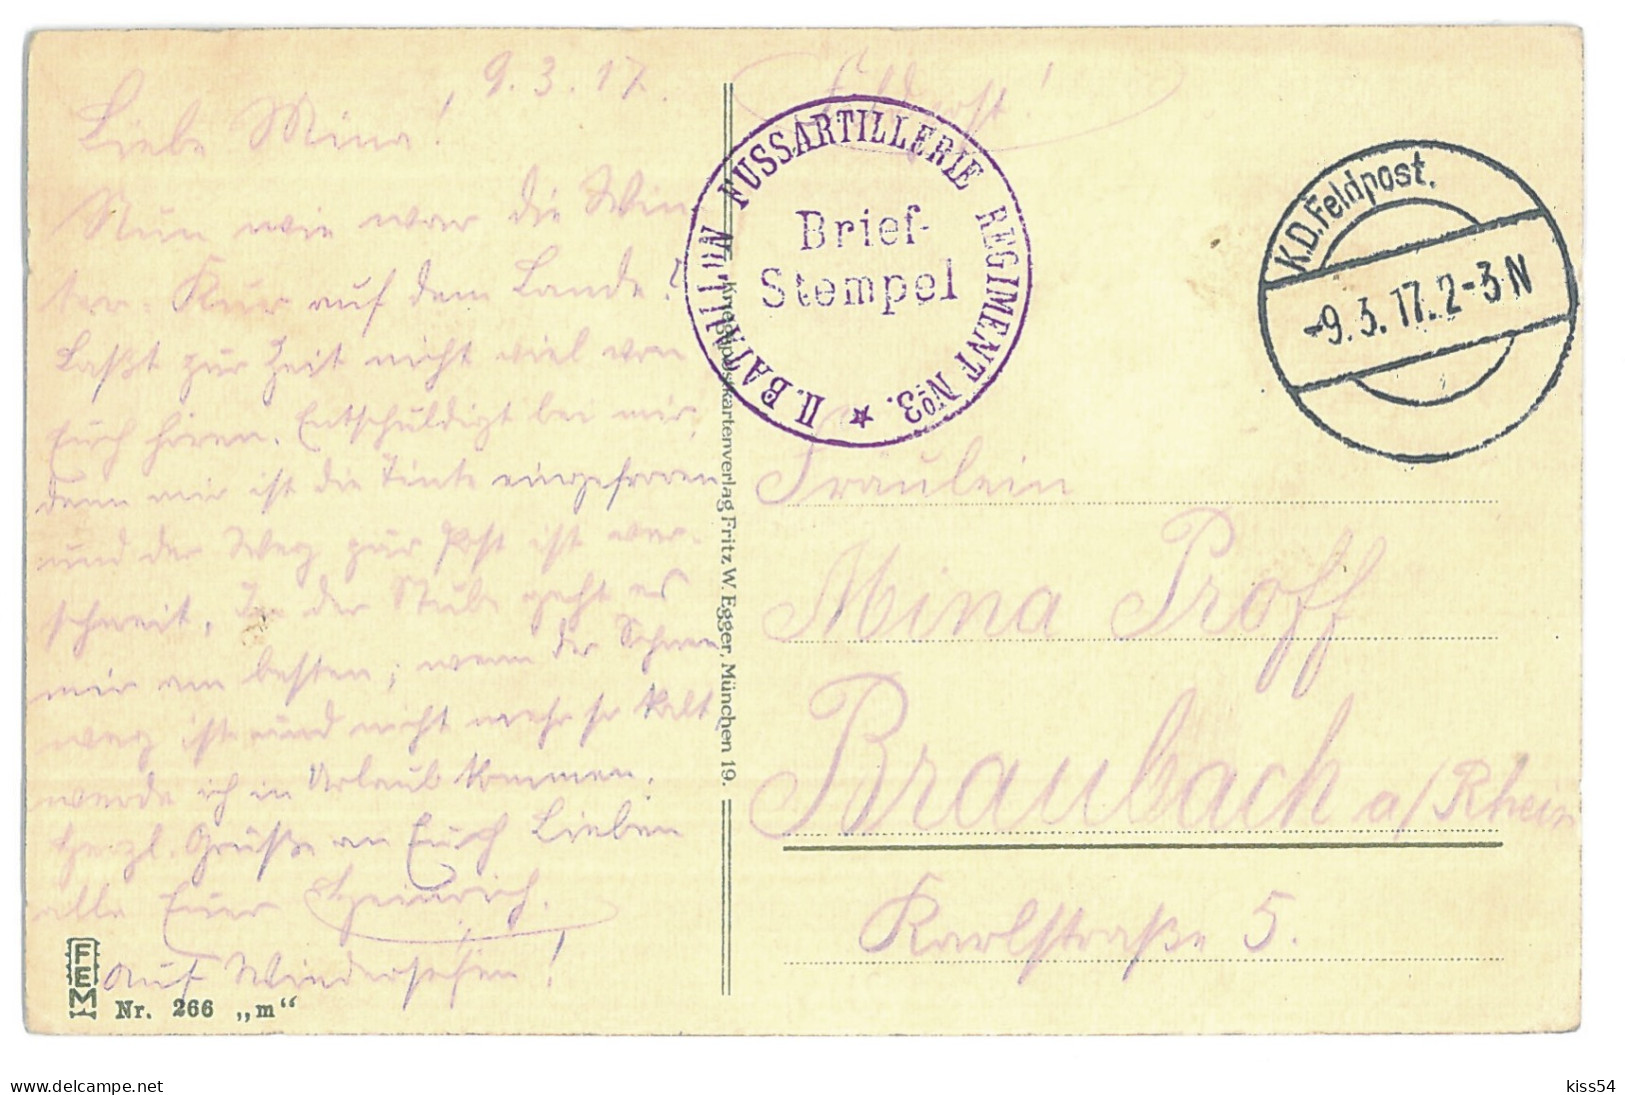 BL 37 - 15350 PINSK, Military House, Belarus - Old Postcard, CENSOR - Used - 1917 - Belarus